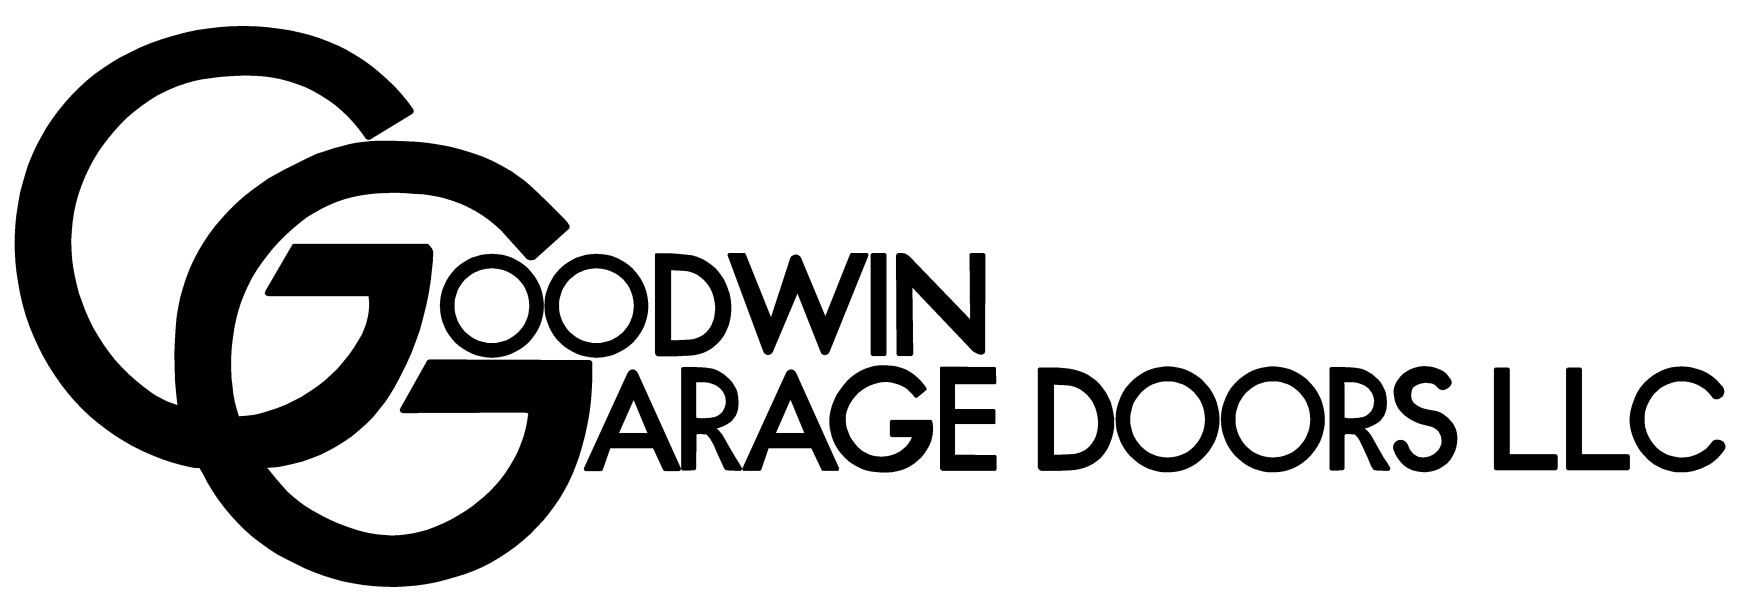 Goodwin Garage Door, LLC.